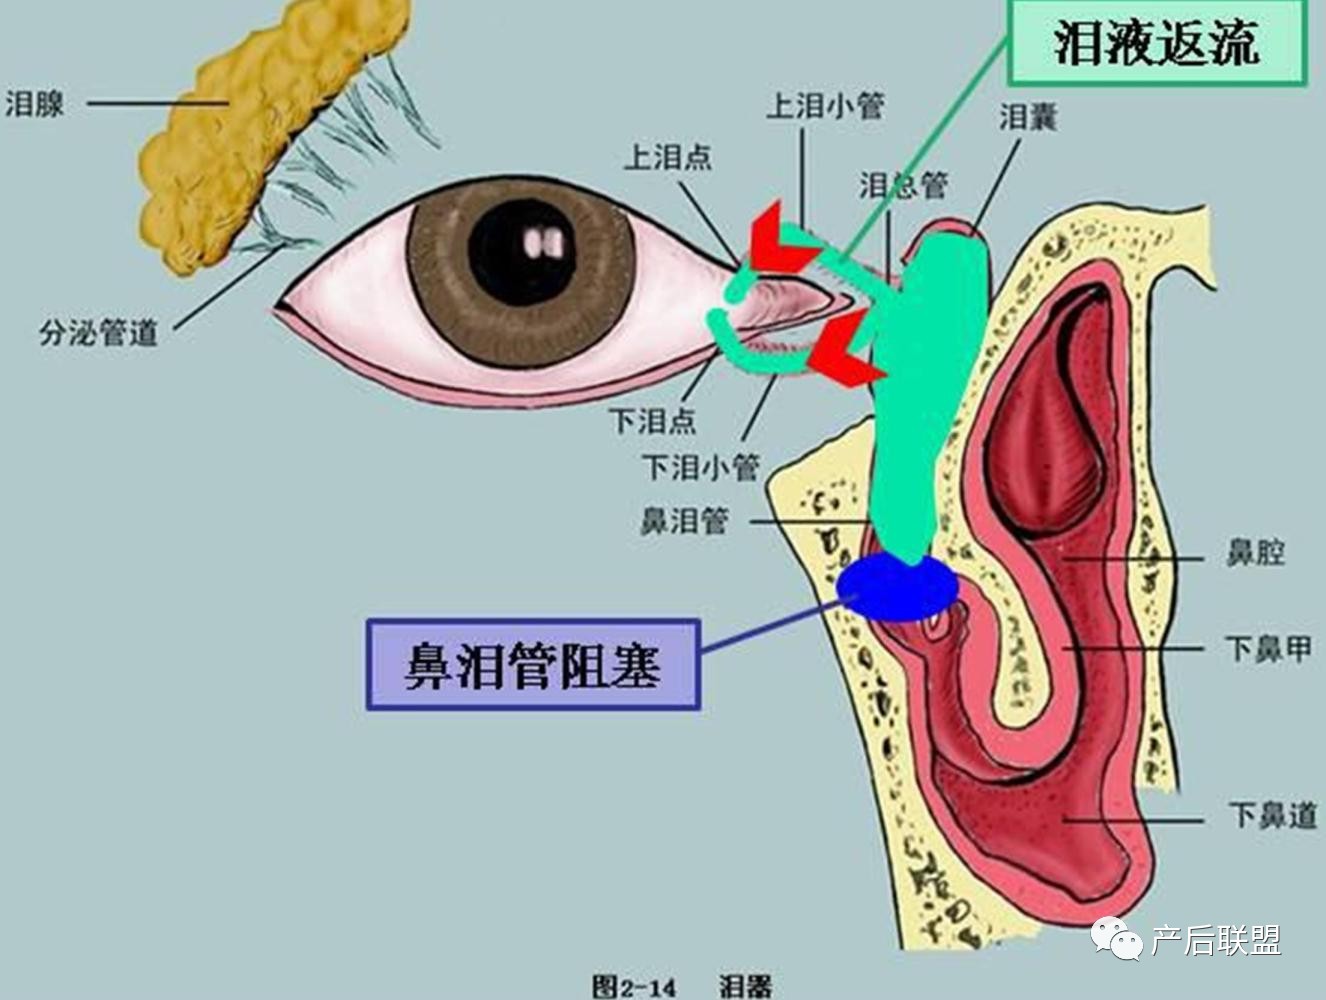 在鼻腔开口处,有种先天性的膜没破开,形成了鼻泪管阻塞,又叫泪囊炎